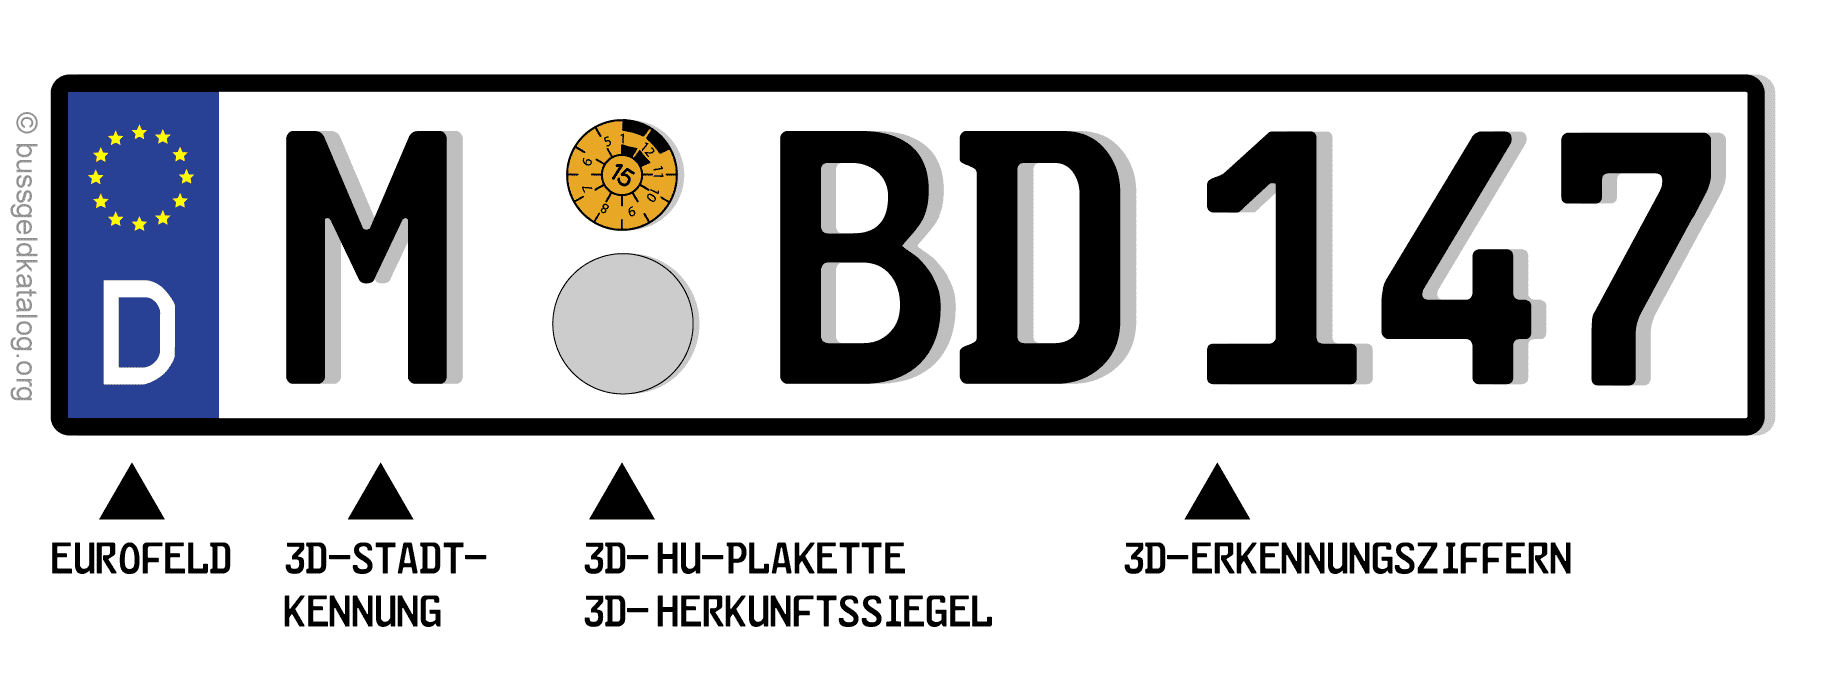 3D Kennzeichen - Der Unterschied ist schon krass! kennzeichenheld.de 